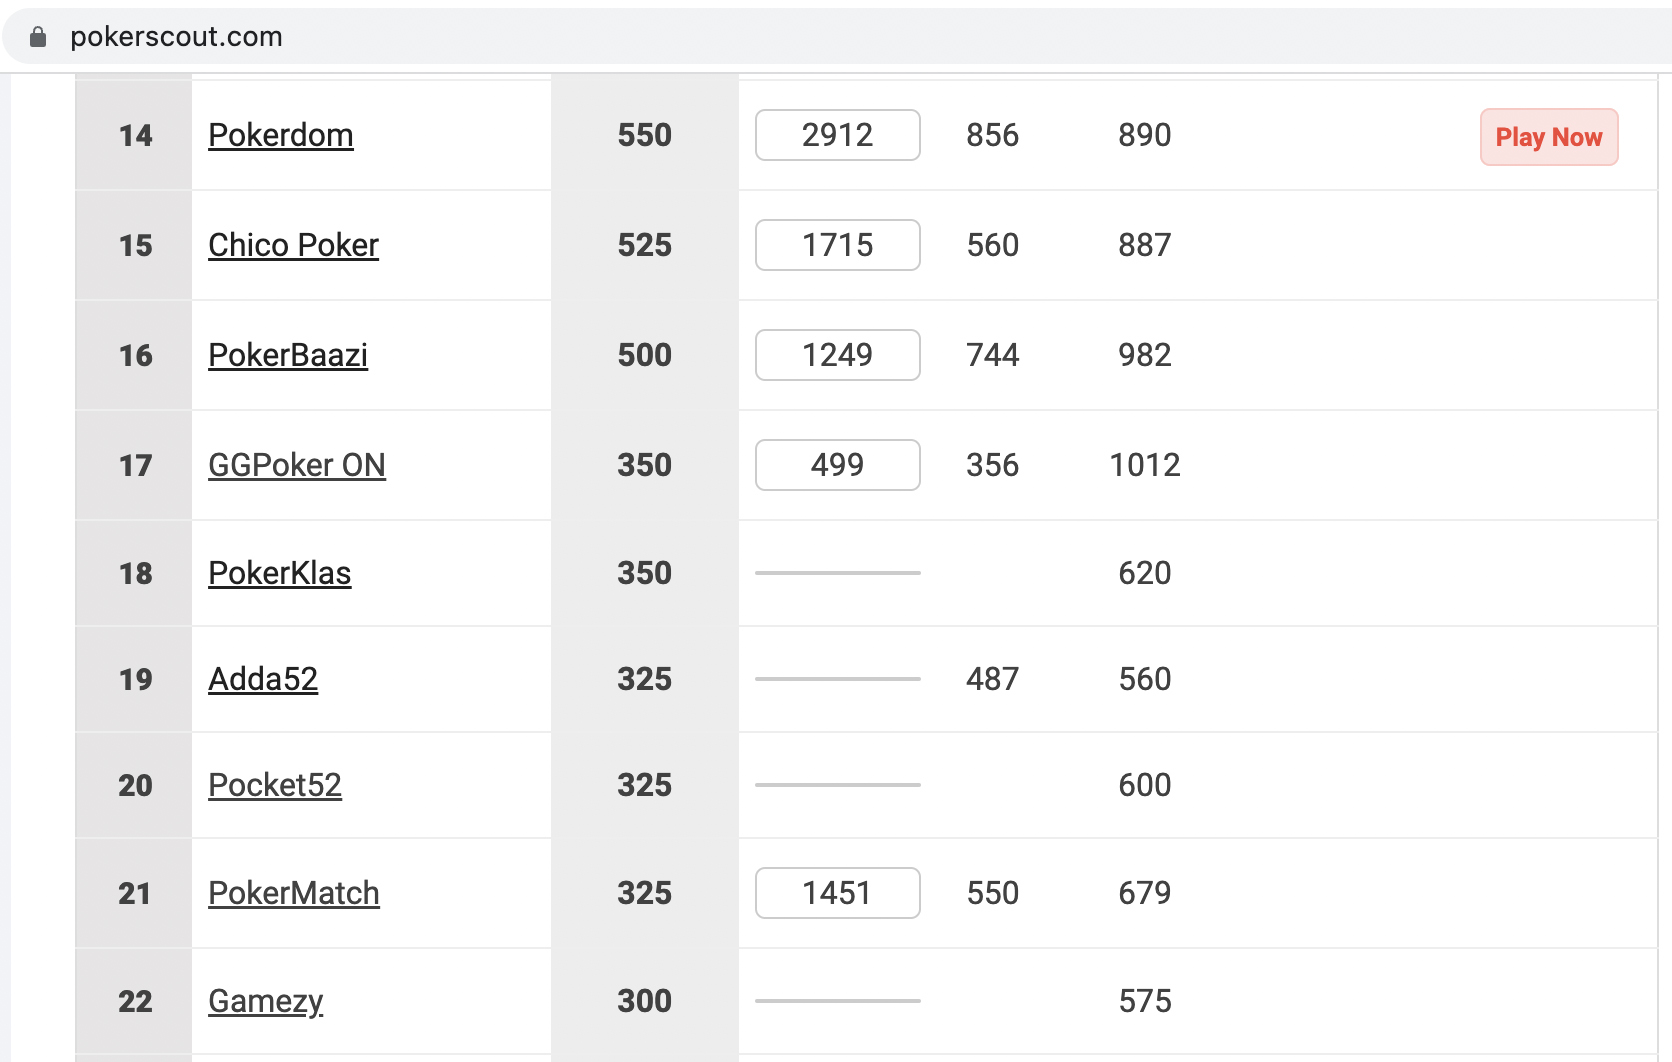 PokerMatch занимает 21-е место по трафику среди всех румов по данным PokerScout